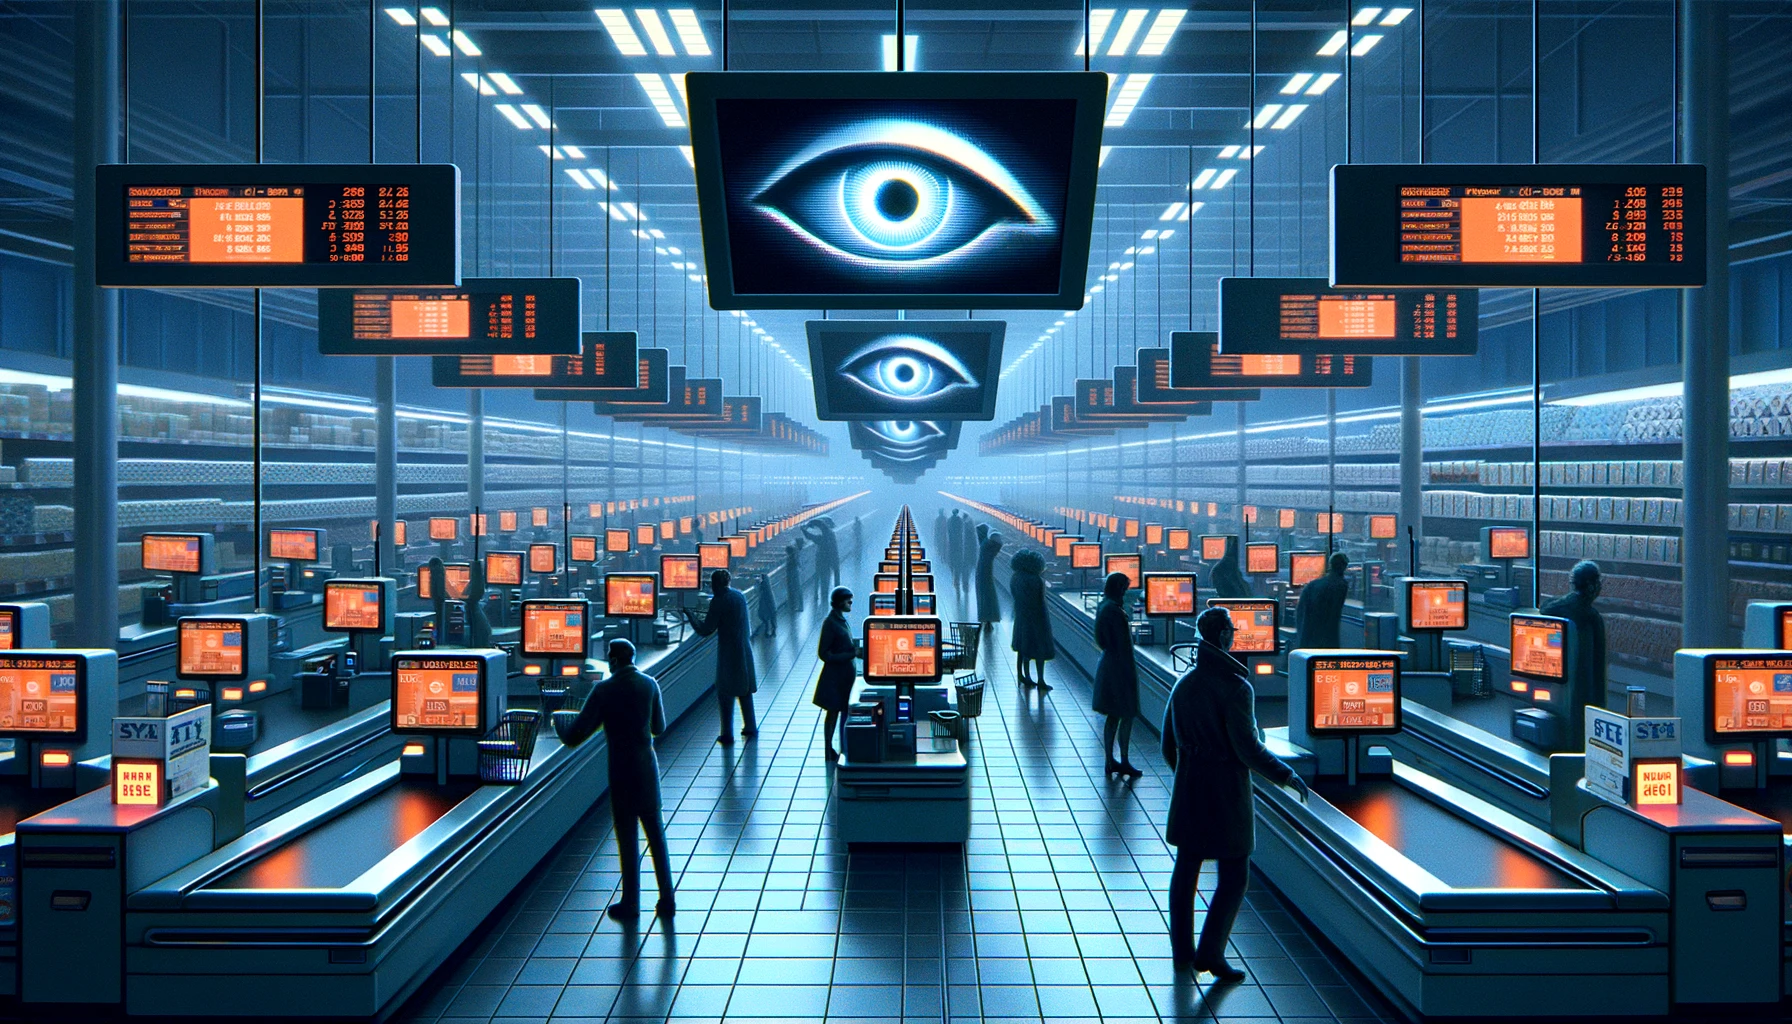 Om de winst nóg verder te verhogen, willen supermarkten nu onze privacy stelen met AI-surveillance